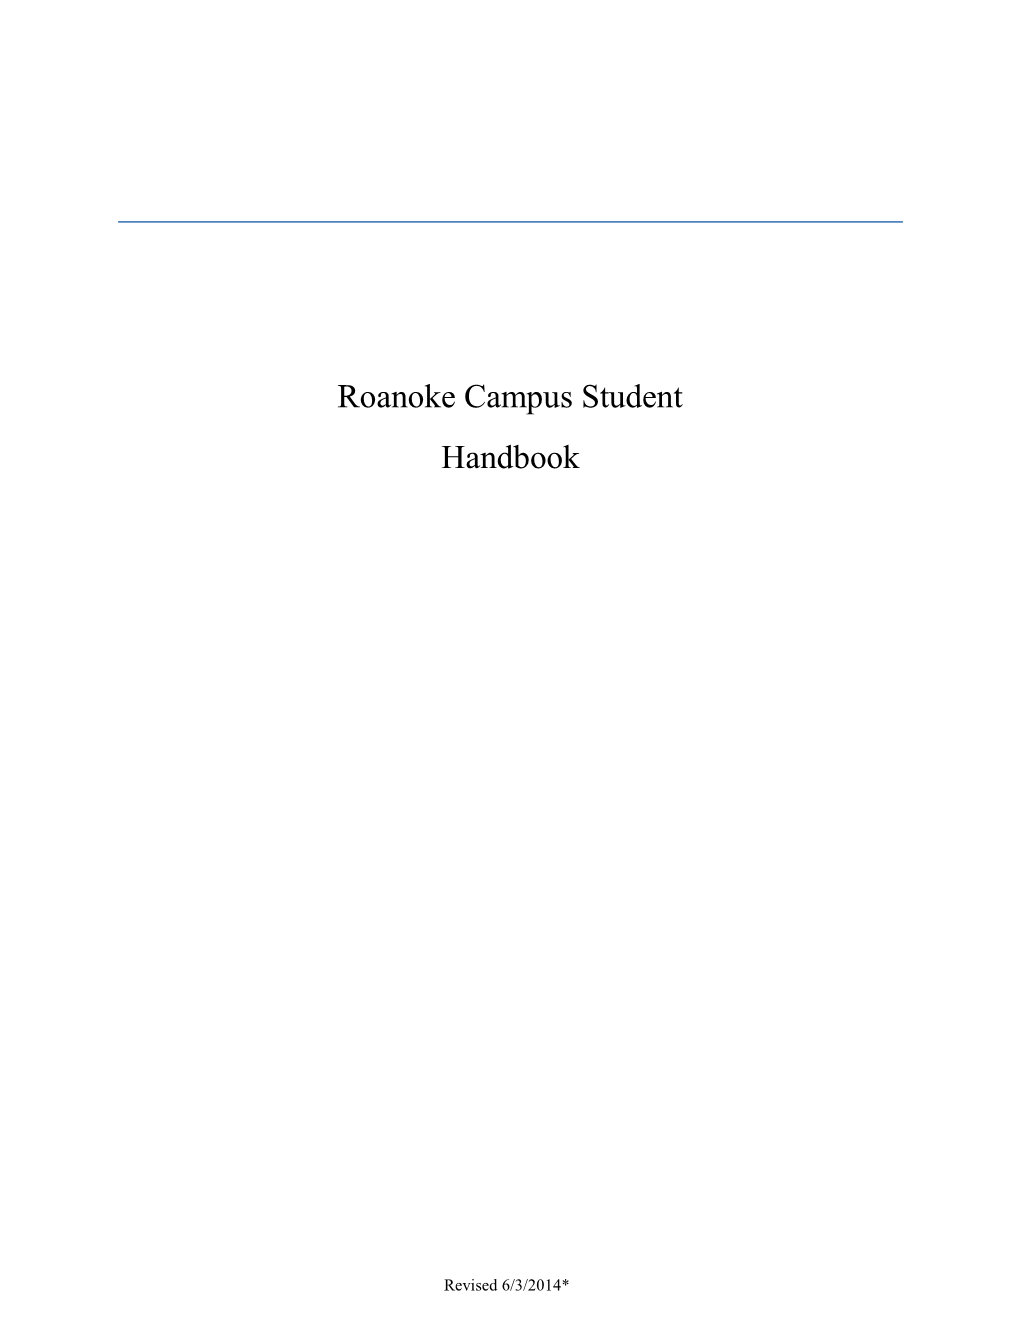 Roanoke Campus Student Handbook